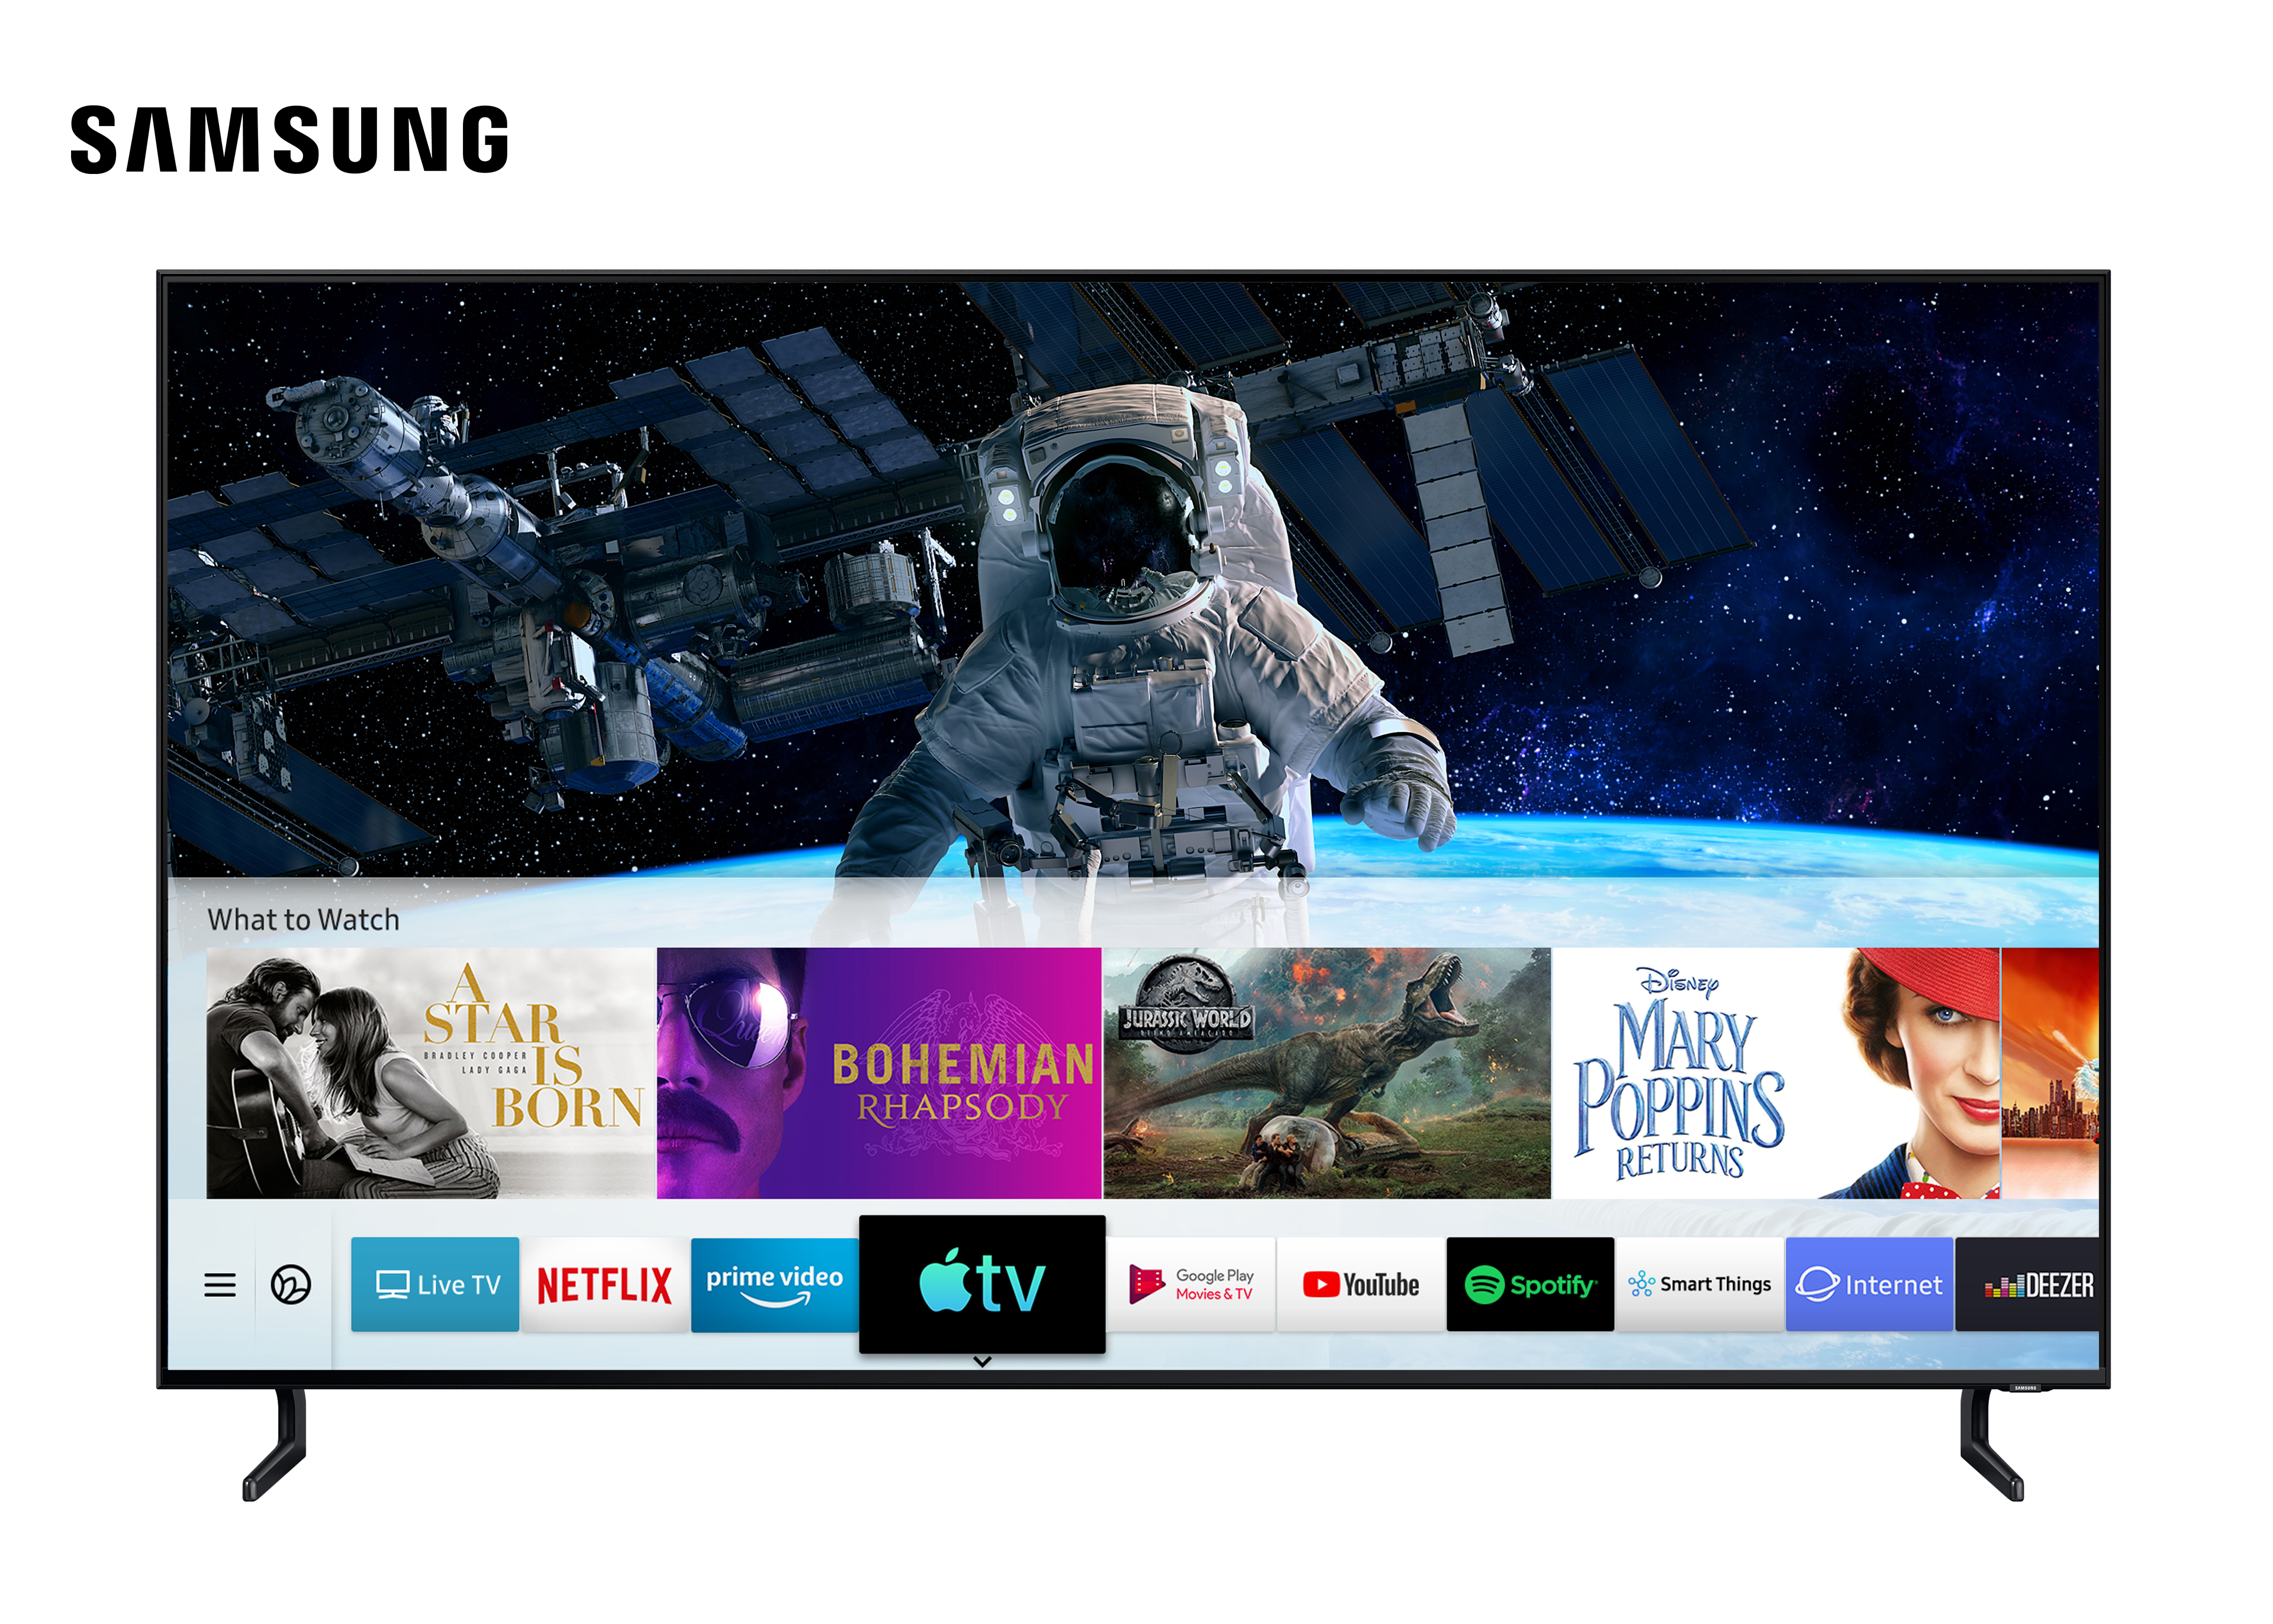 سامسونج توفر تطبيق Apple TV وتدعم ميزة آبل AirPlay 2 على تلفزيوناتها الذكية